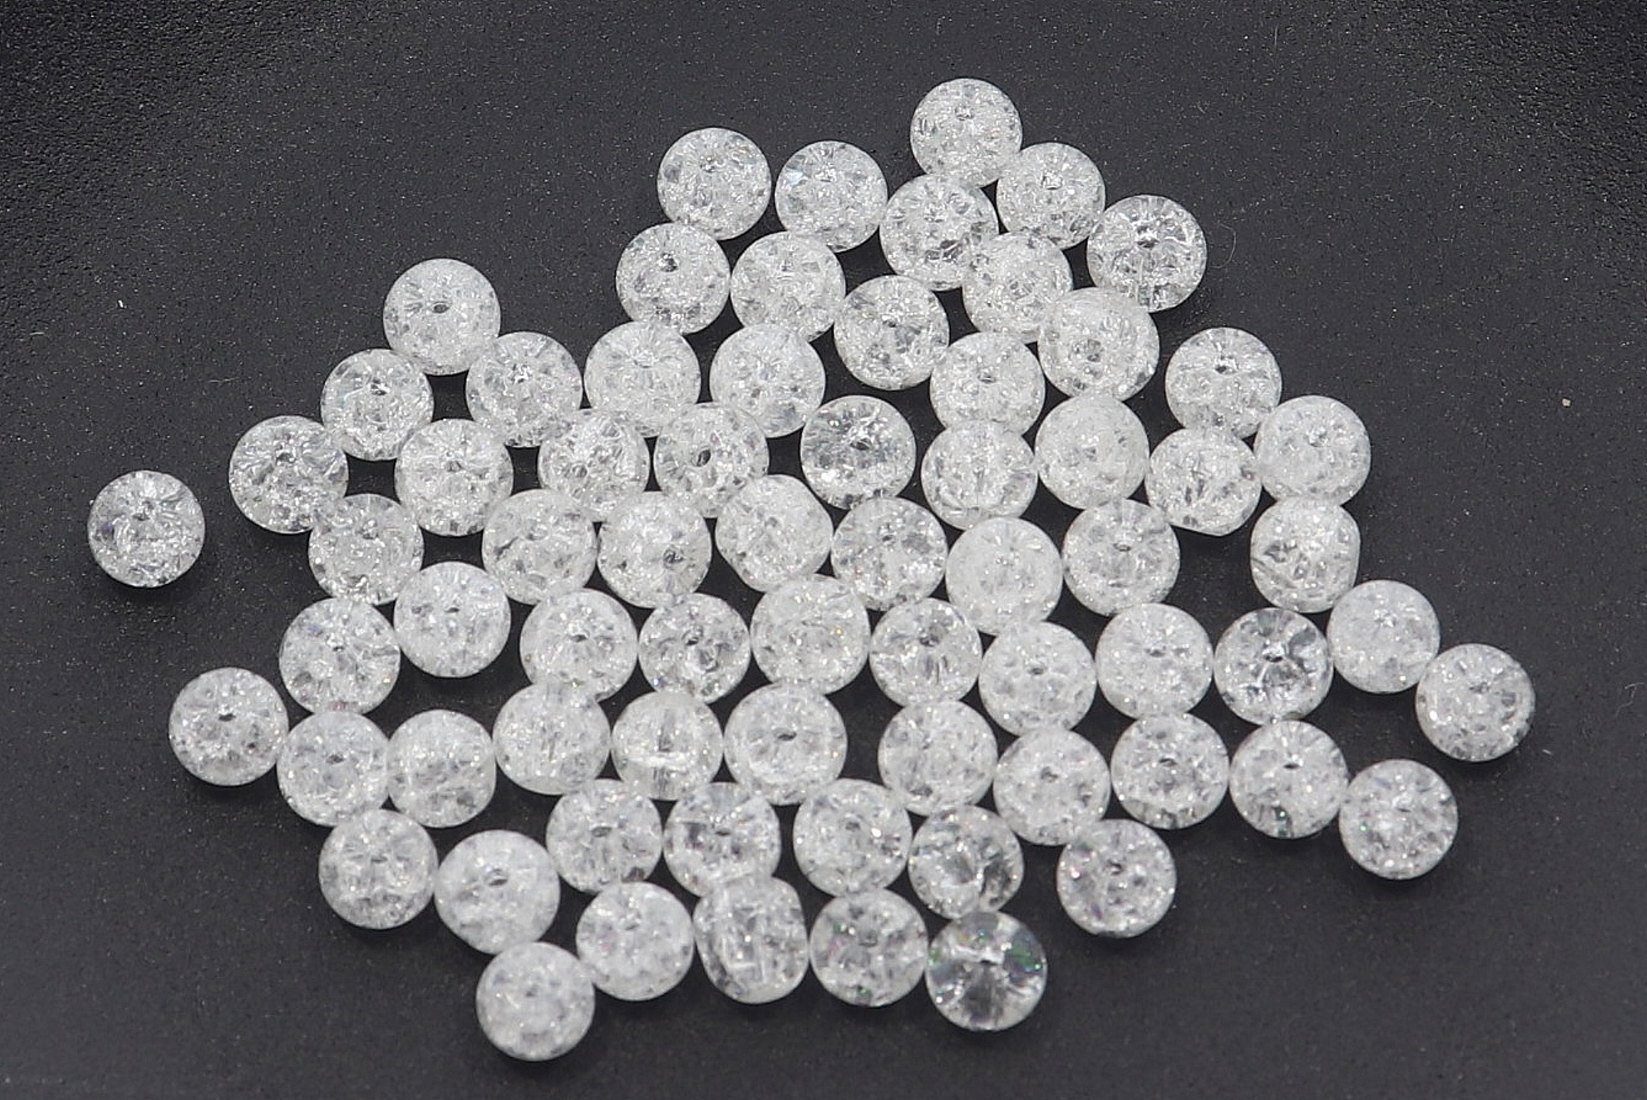 Bergkristall cracked 4S197 - 4mm Edelstein Kugel 10 Stück